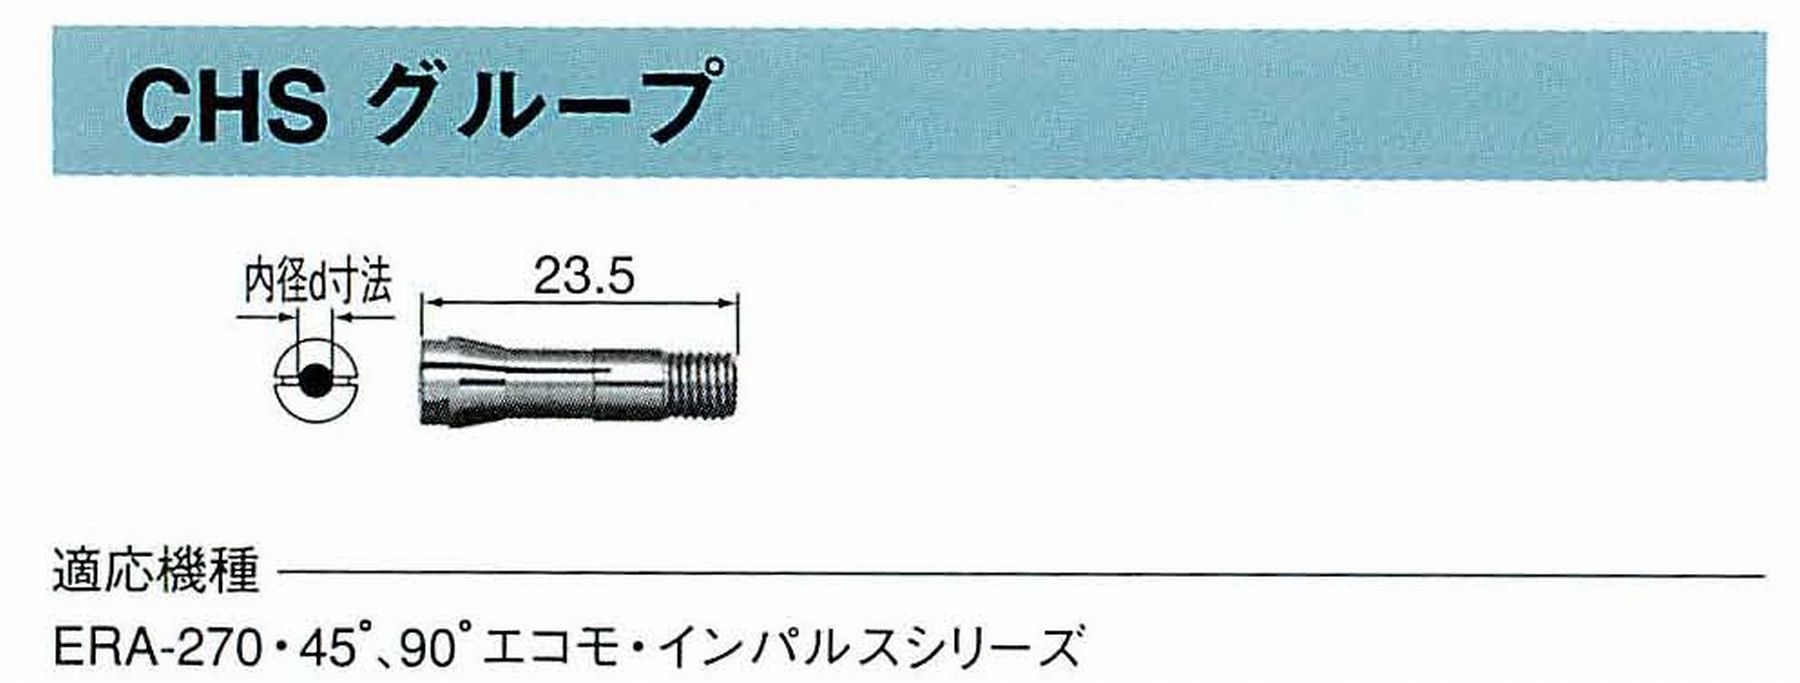 ナカニシ/NAKANISHI コレットチャック コード番号 90512 型式 CHS-1.2 内径:Φ1.2